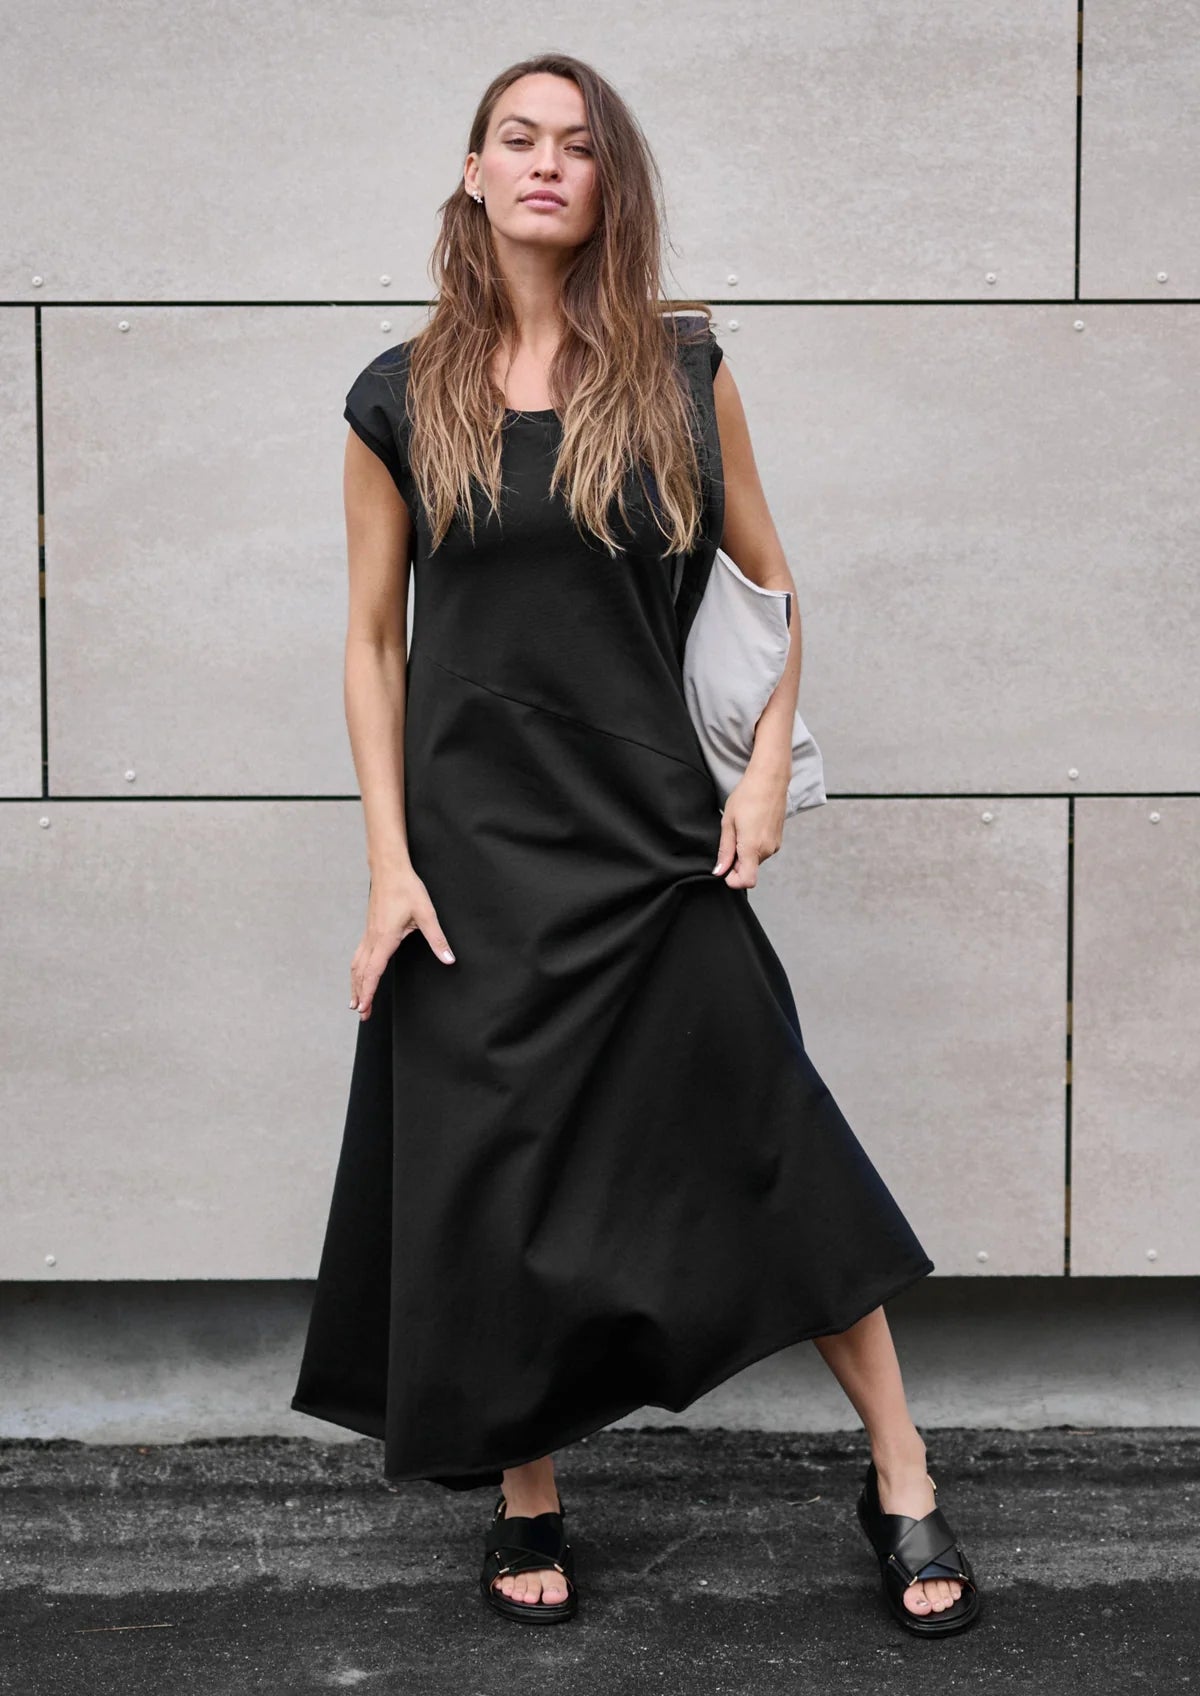 Henriette Steffensen SWEAT DRESS | 73405
BLACK